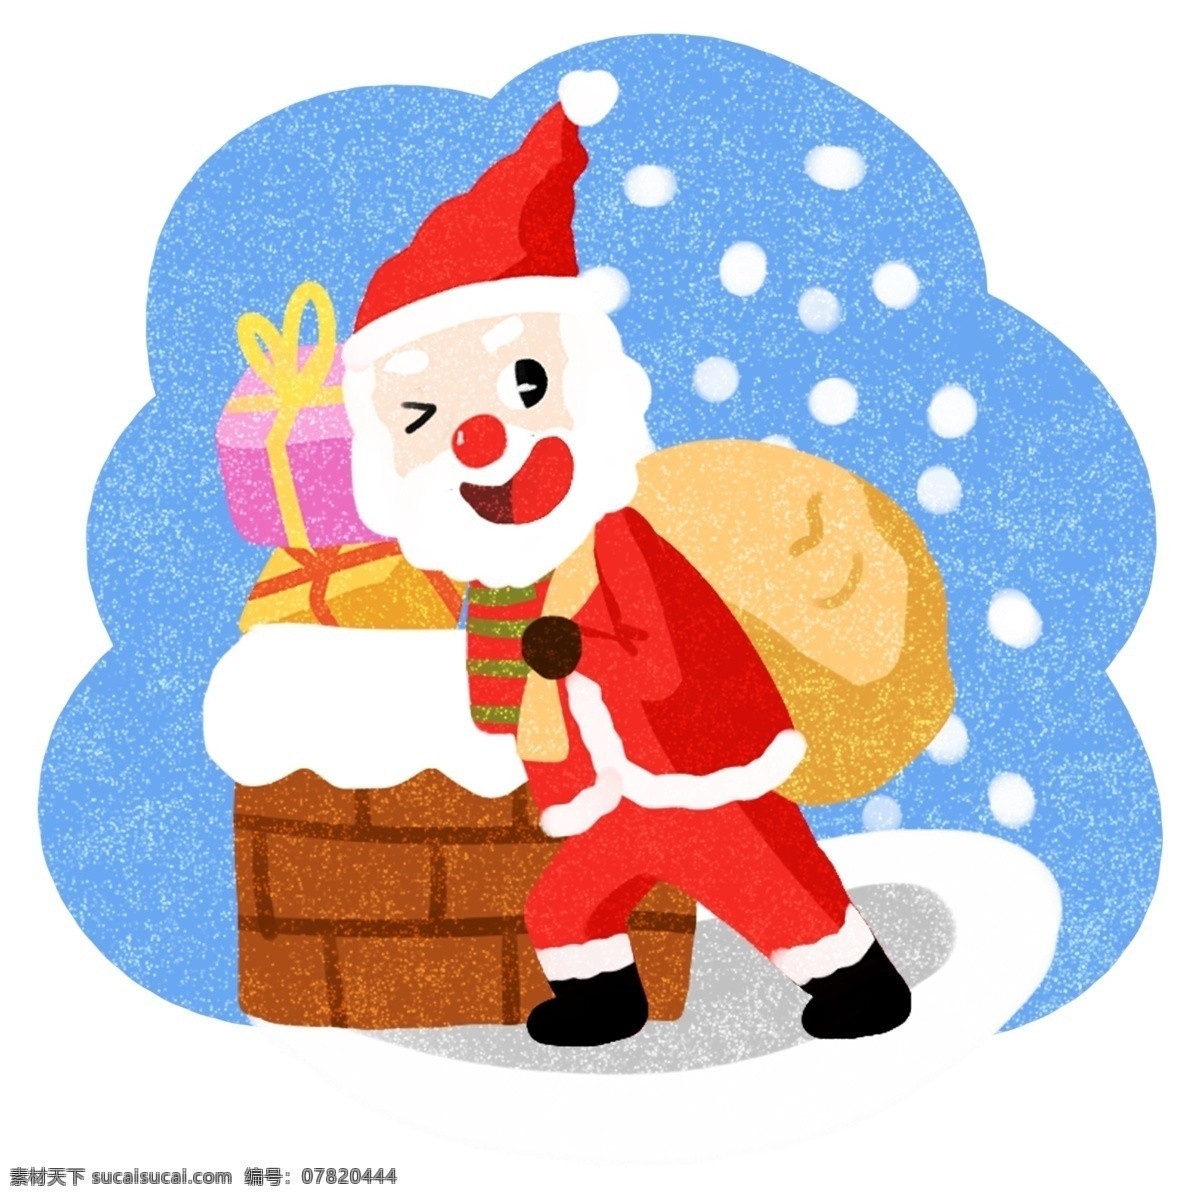 圣诞节 可爱 圣诞老人 卡通 插画 钻 烟囱 合集 圣诞 过节 节日 冬季 淘宝 天猫 海报 活动 促销 大促 送礼物的老人